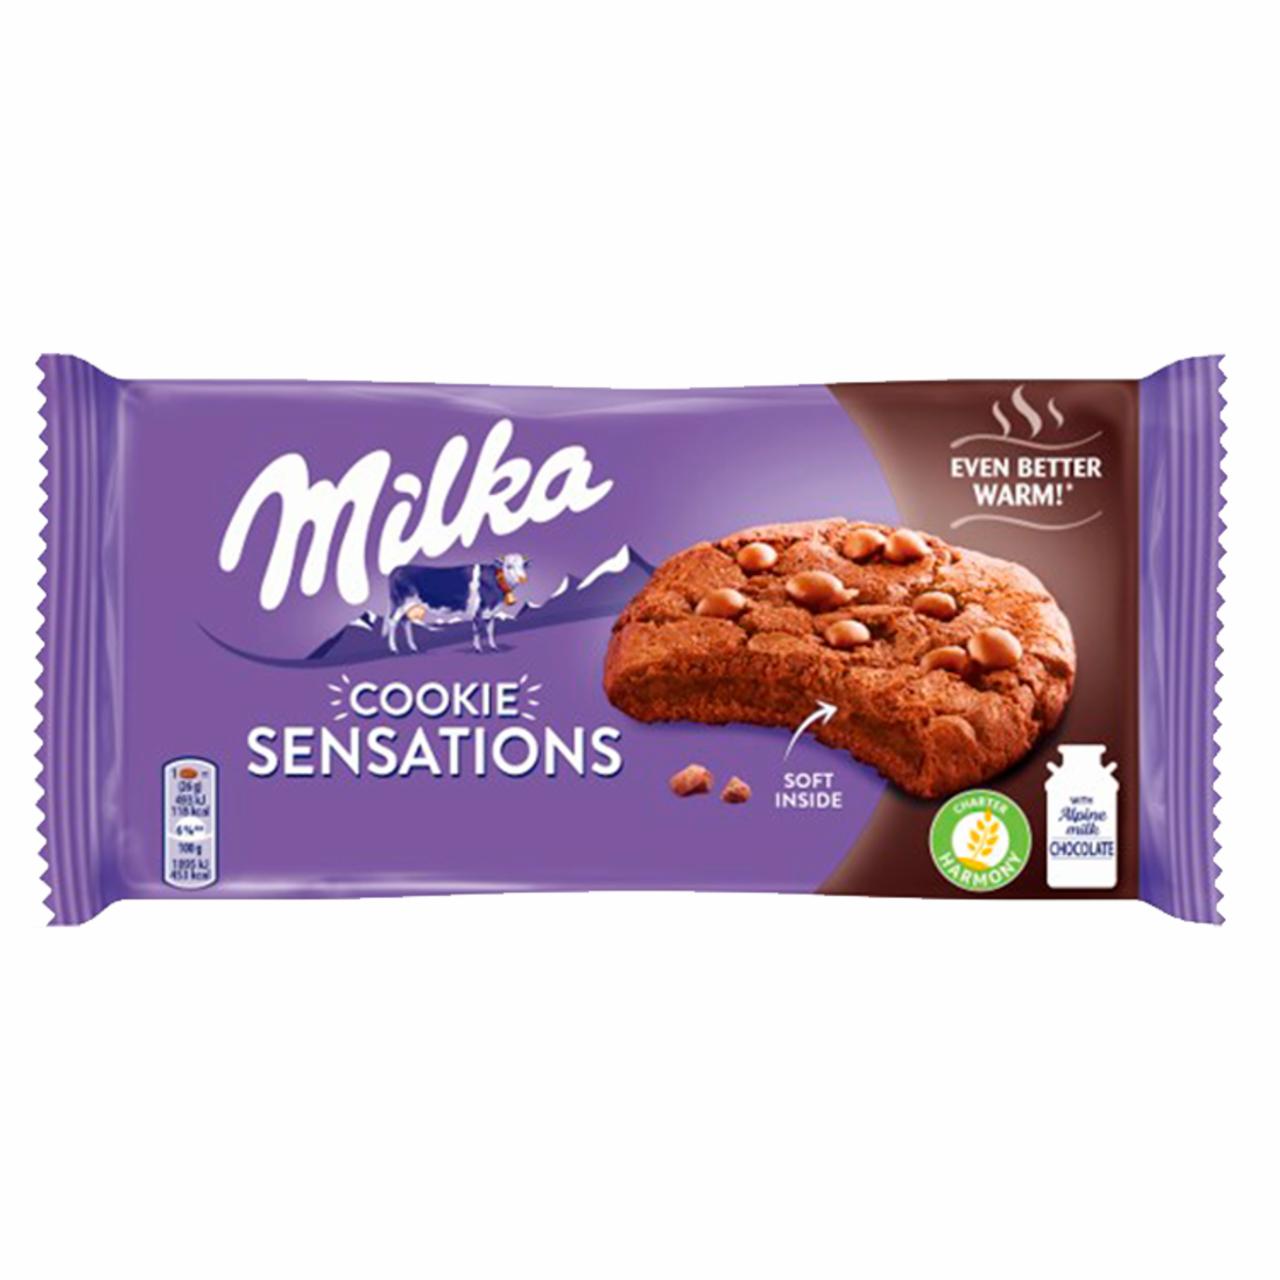 Zdjęcia - Milka Sensations Cookies Ciastka kakaowe z miękkim środkiem i kawałkami czekolady mlecznej 156 g